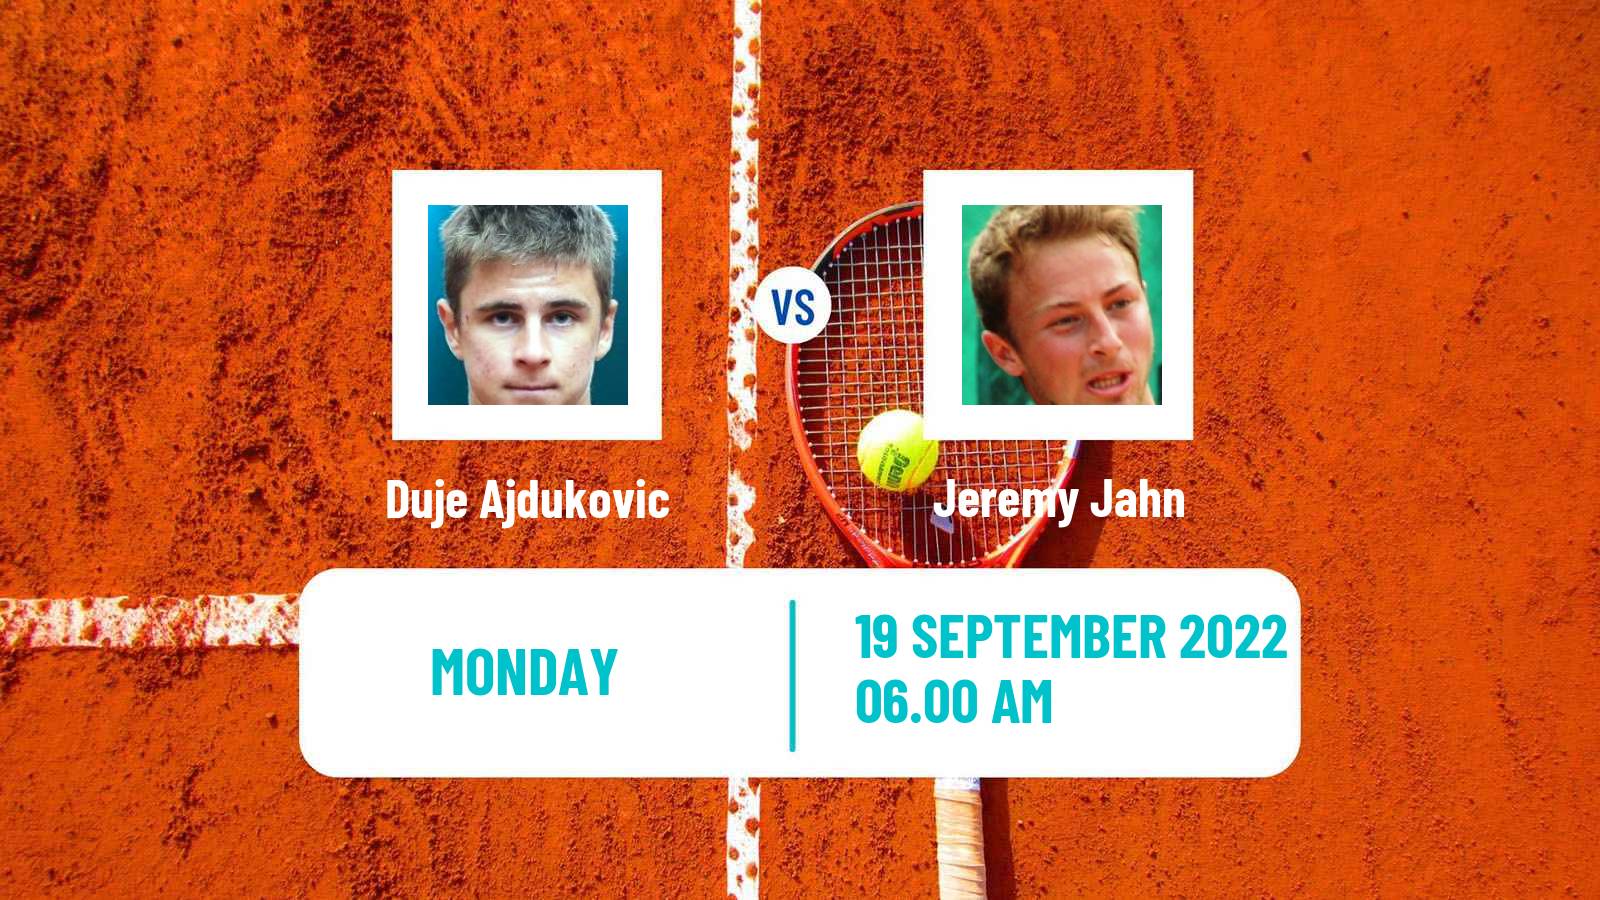 Tennis ATP Challenger Duje Ajdukovic - Jeremy Jahn